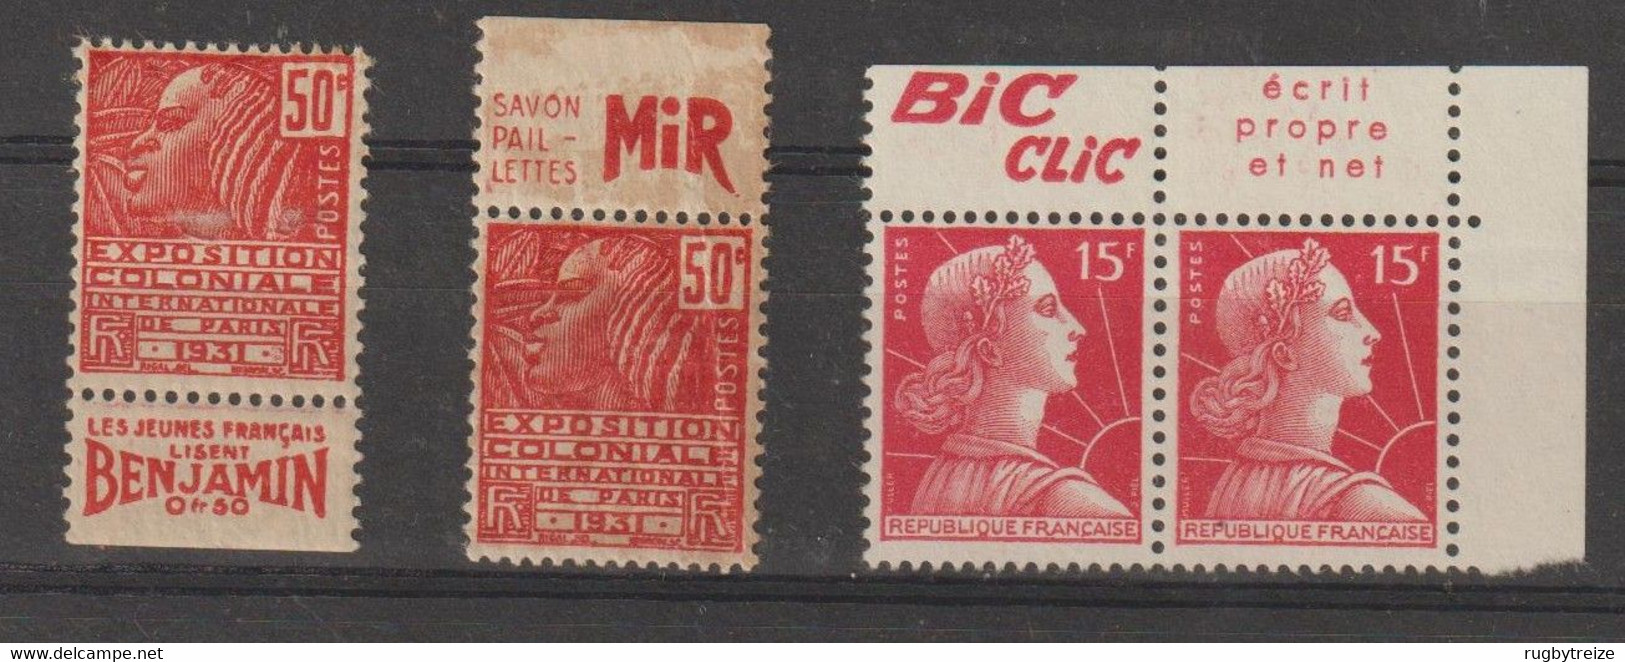 6063 Lot De 4 Timbres Publicitaire Publicité BIC CLIC SAVON MIR BENJAMIN EXPO COLONIALE 1931 - Unused Stamps